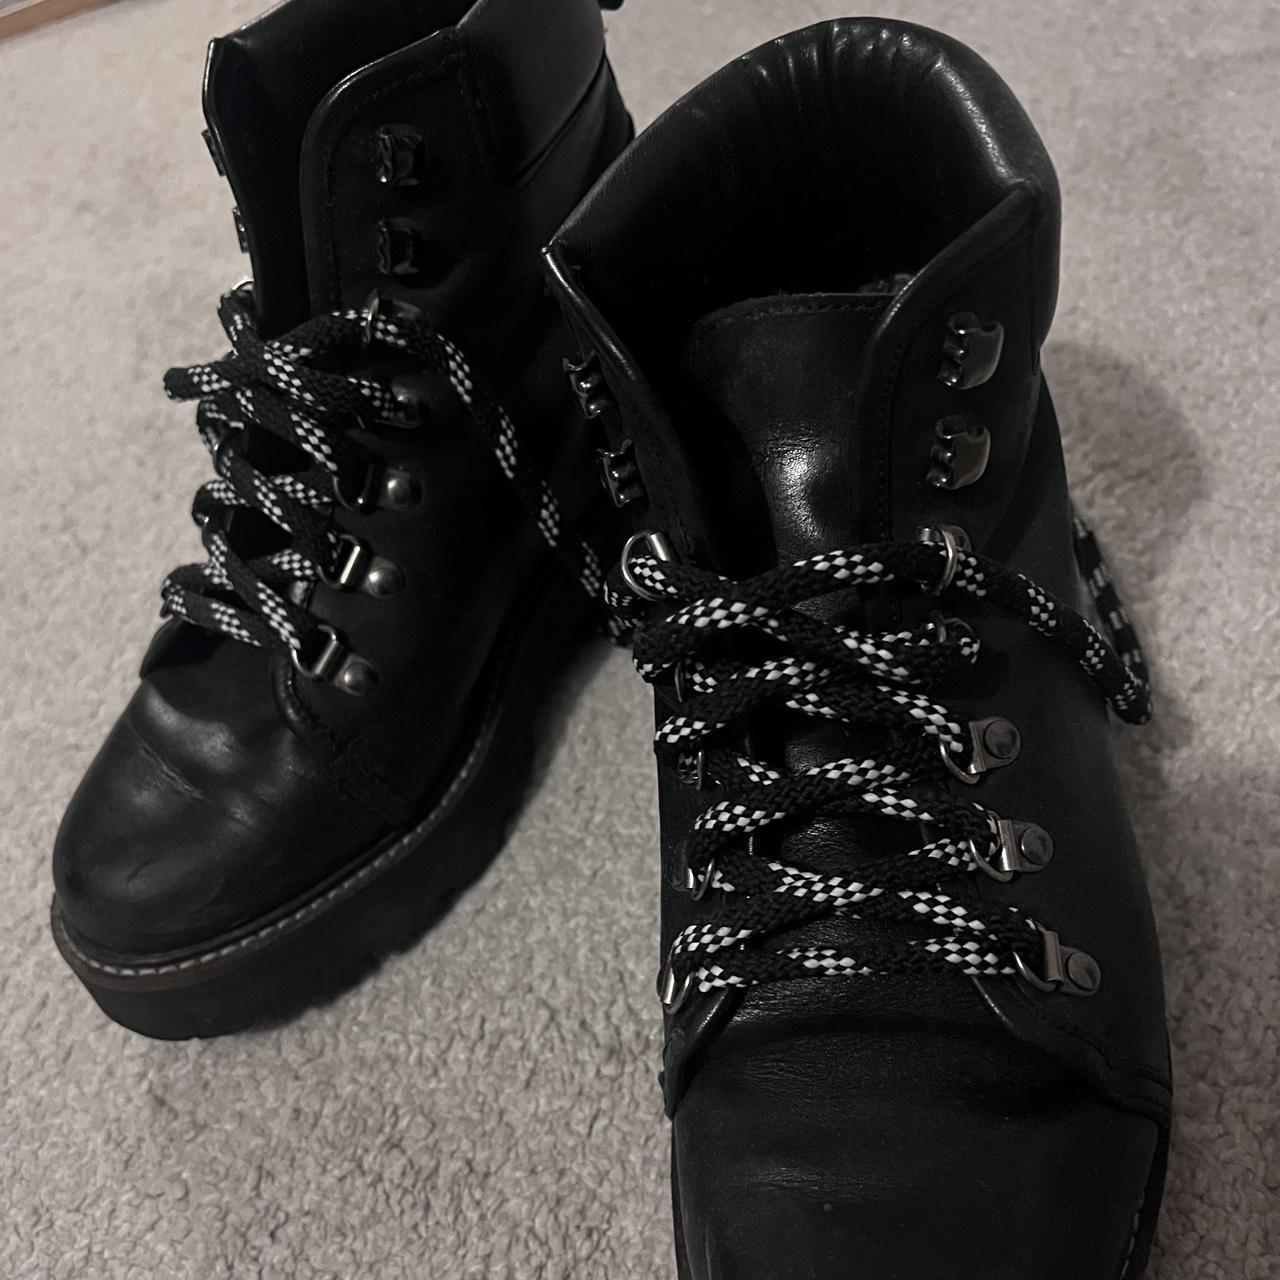 Carvela Black Leather Boots size 4. Barely worn,... - Depop